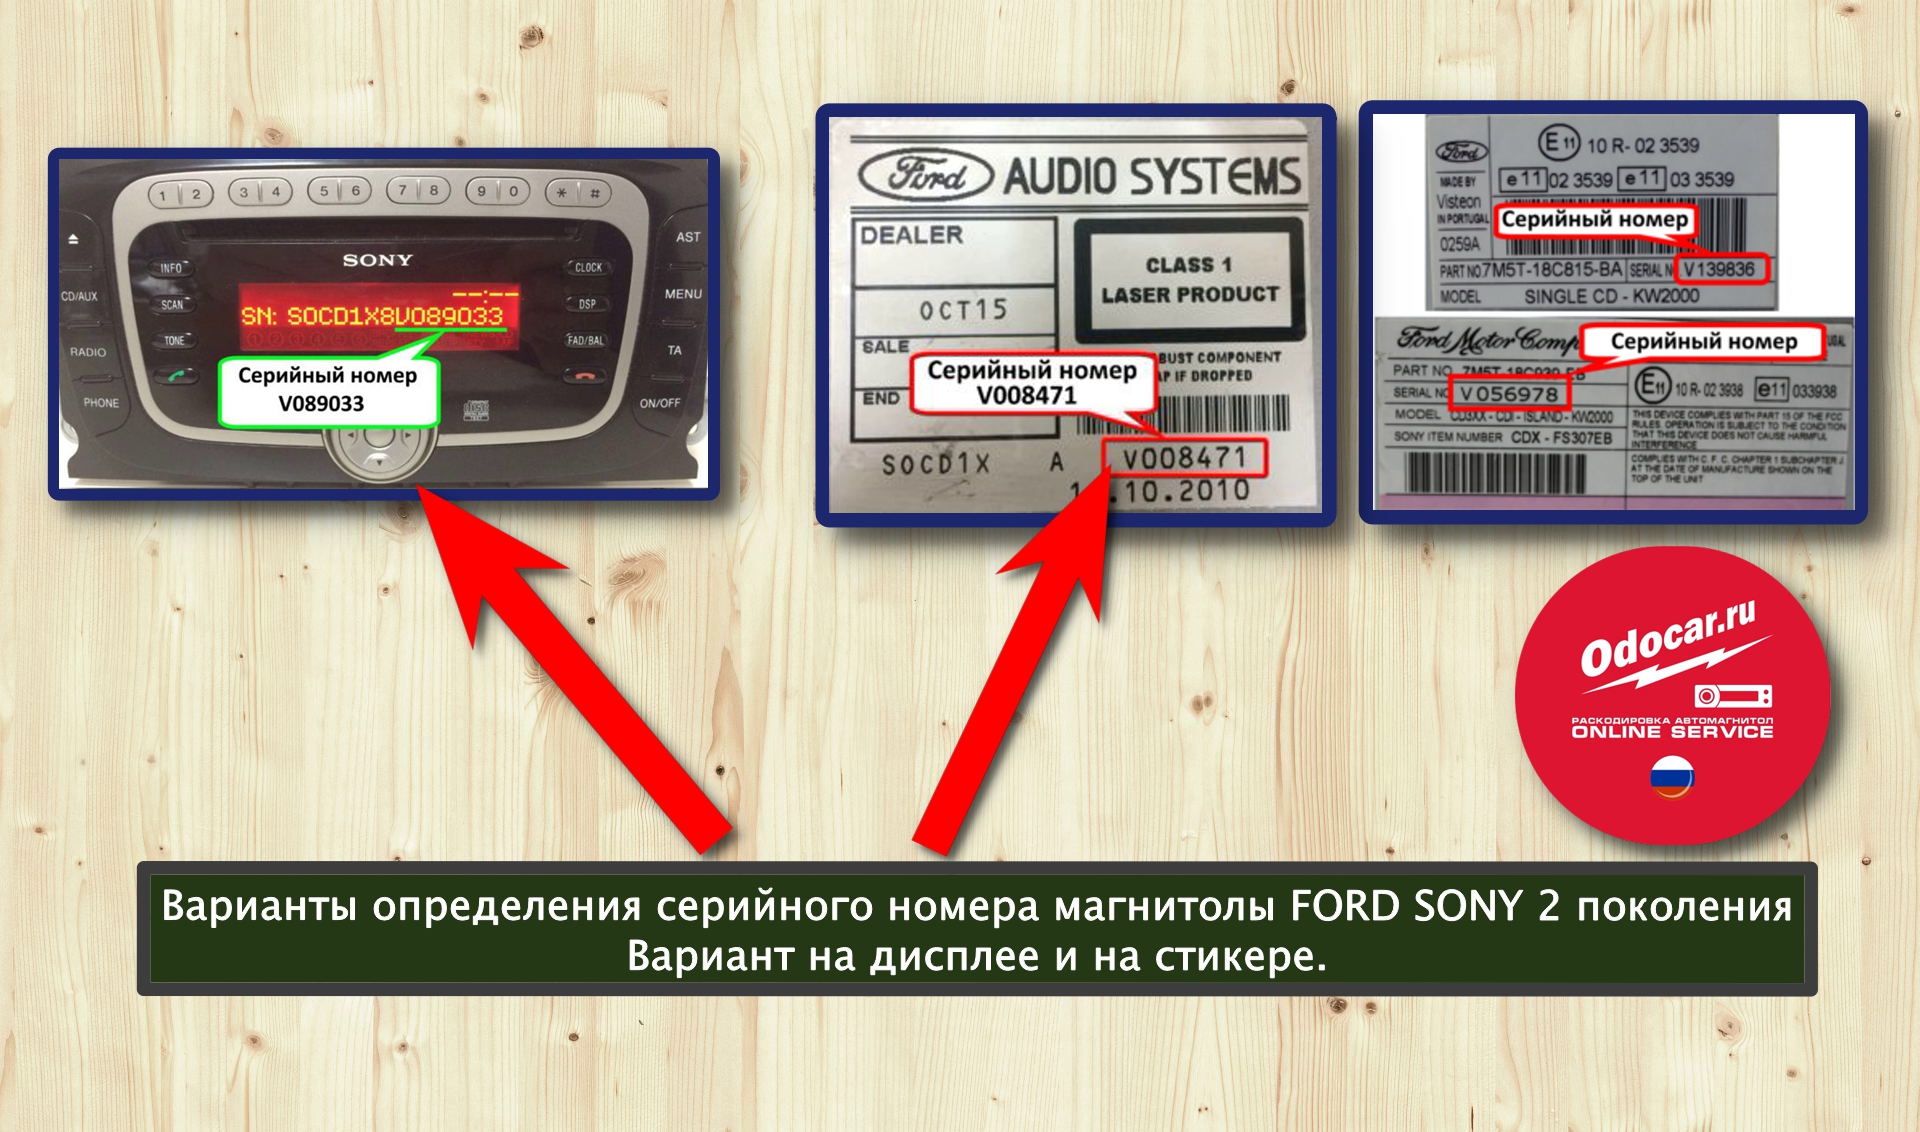 Пин код автомагнитолы. Серийный номер магнитолы Sony Ford. Код магнитолы по серийному номеру. Код для автомагнитолы Sony.